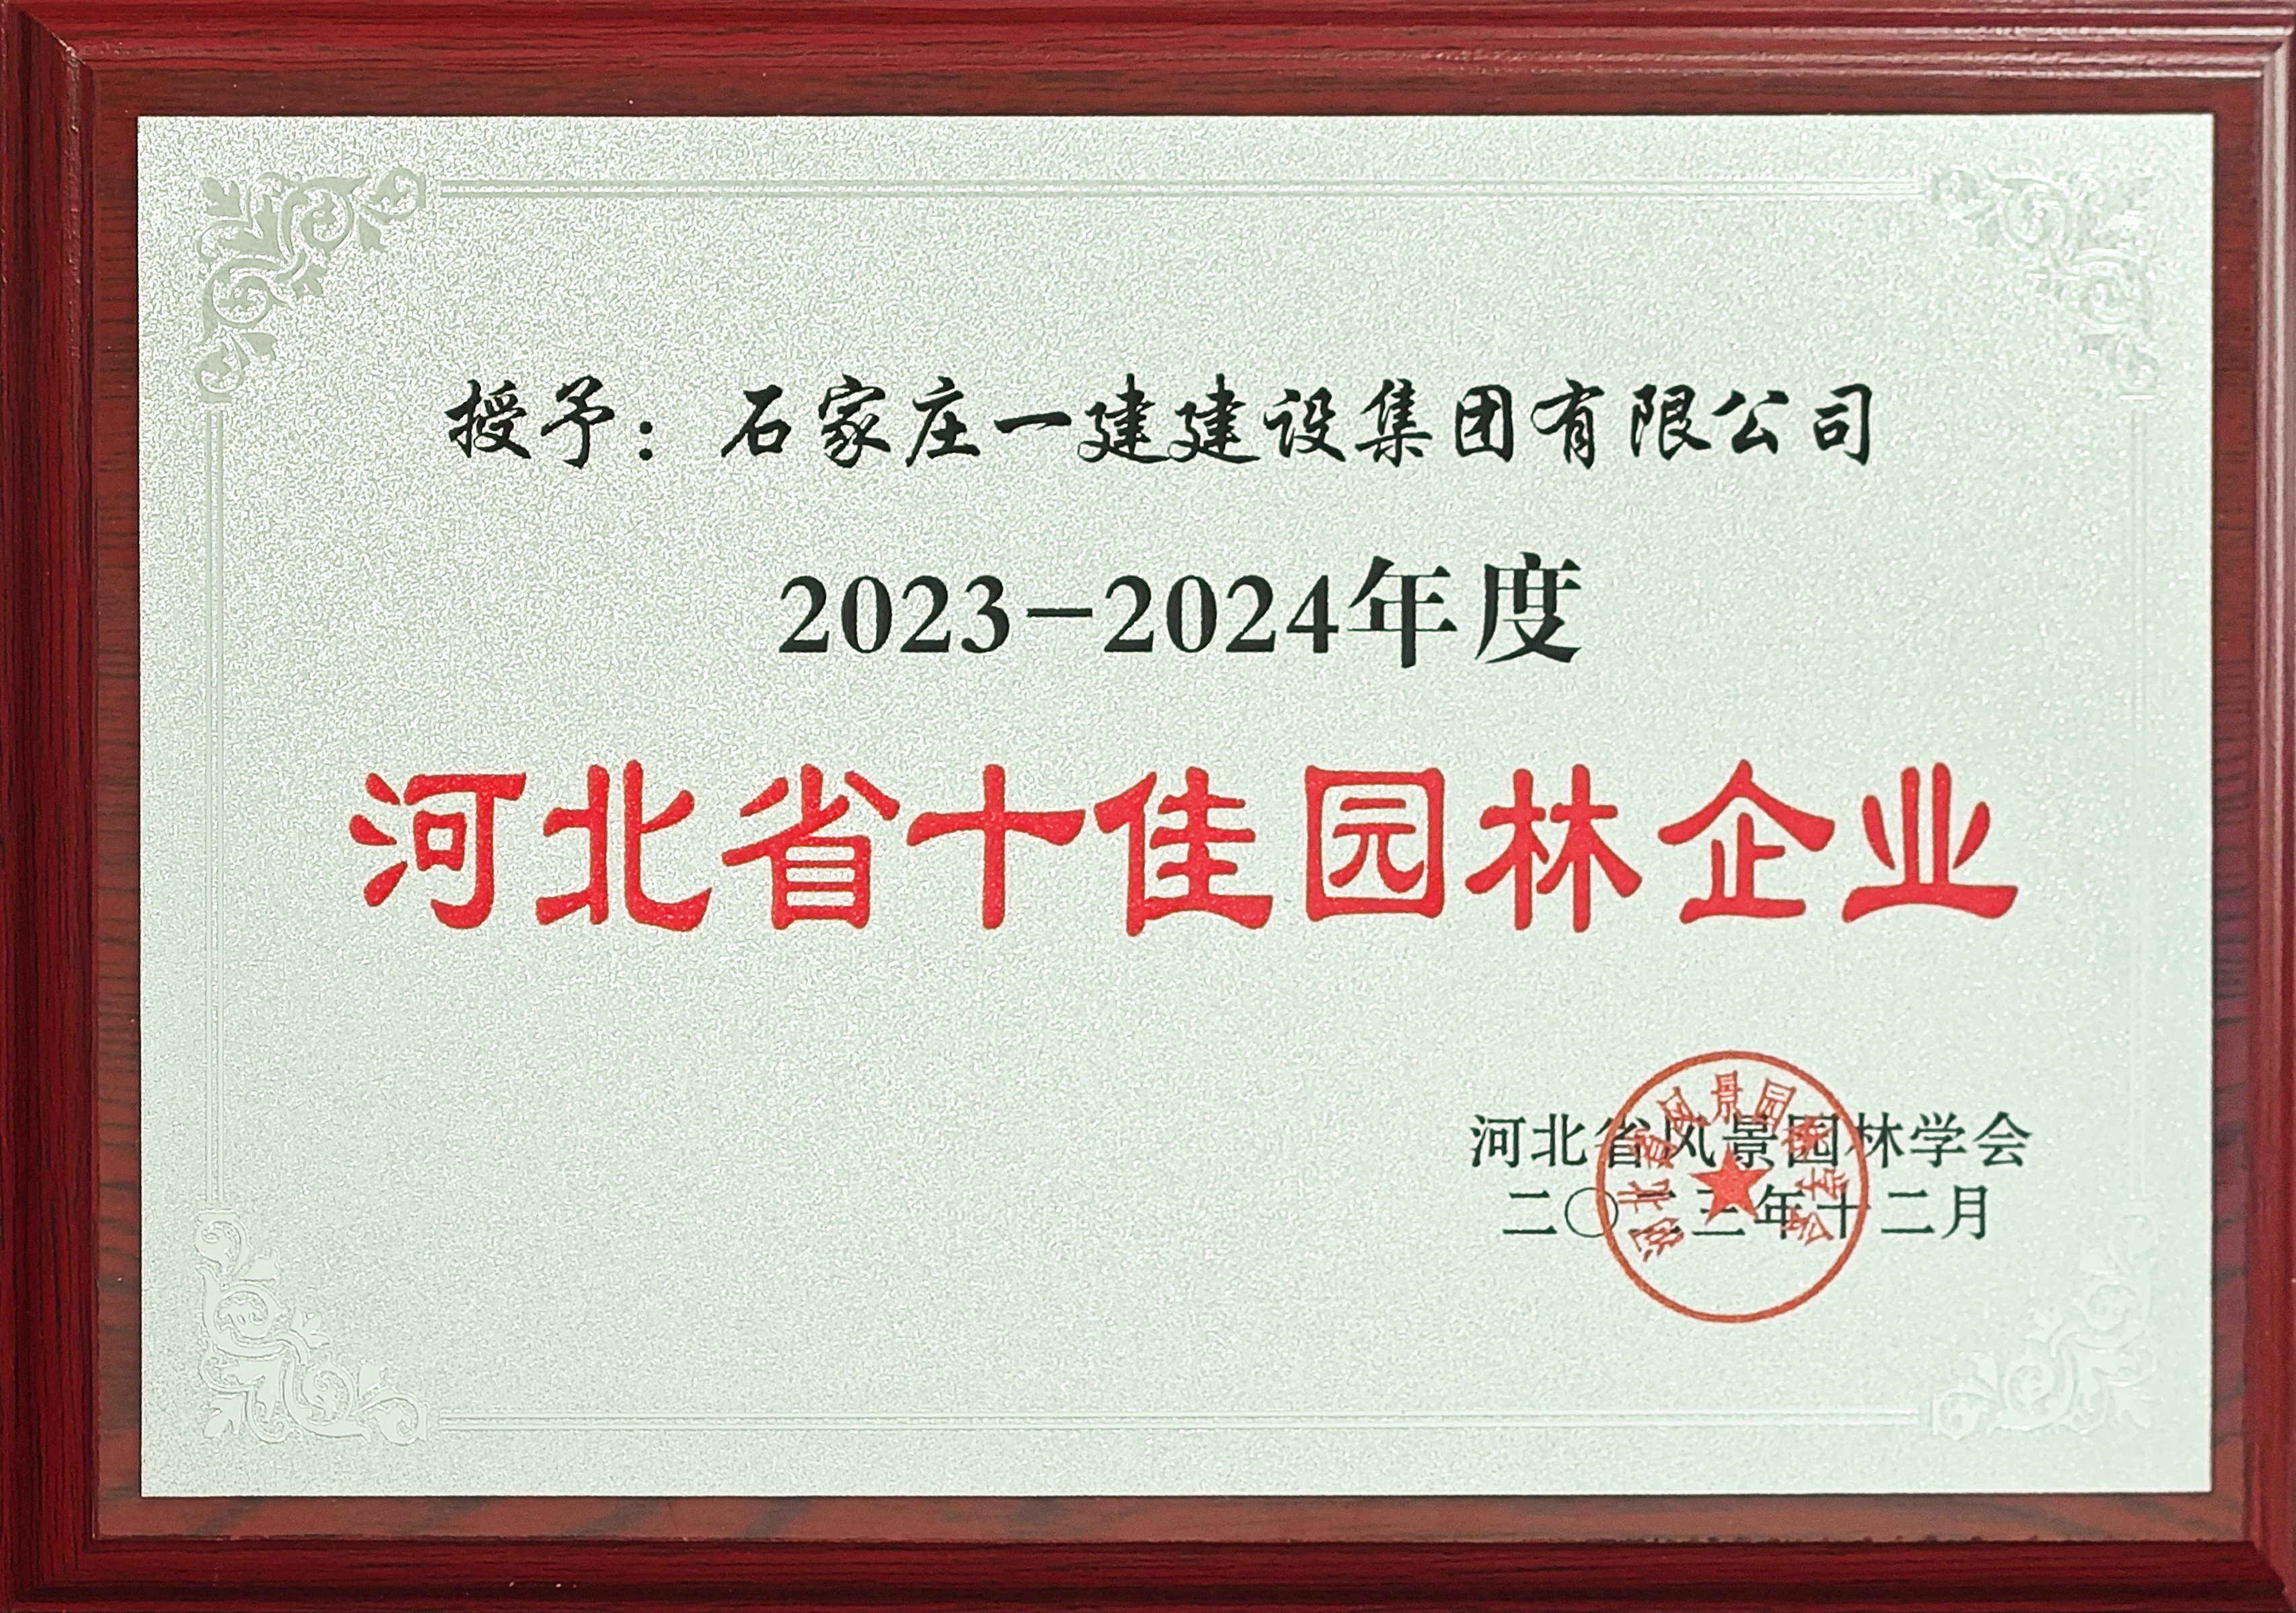 2023-2024年度河北省十佳园林企业